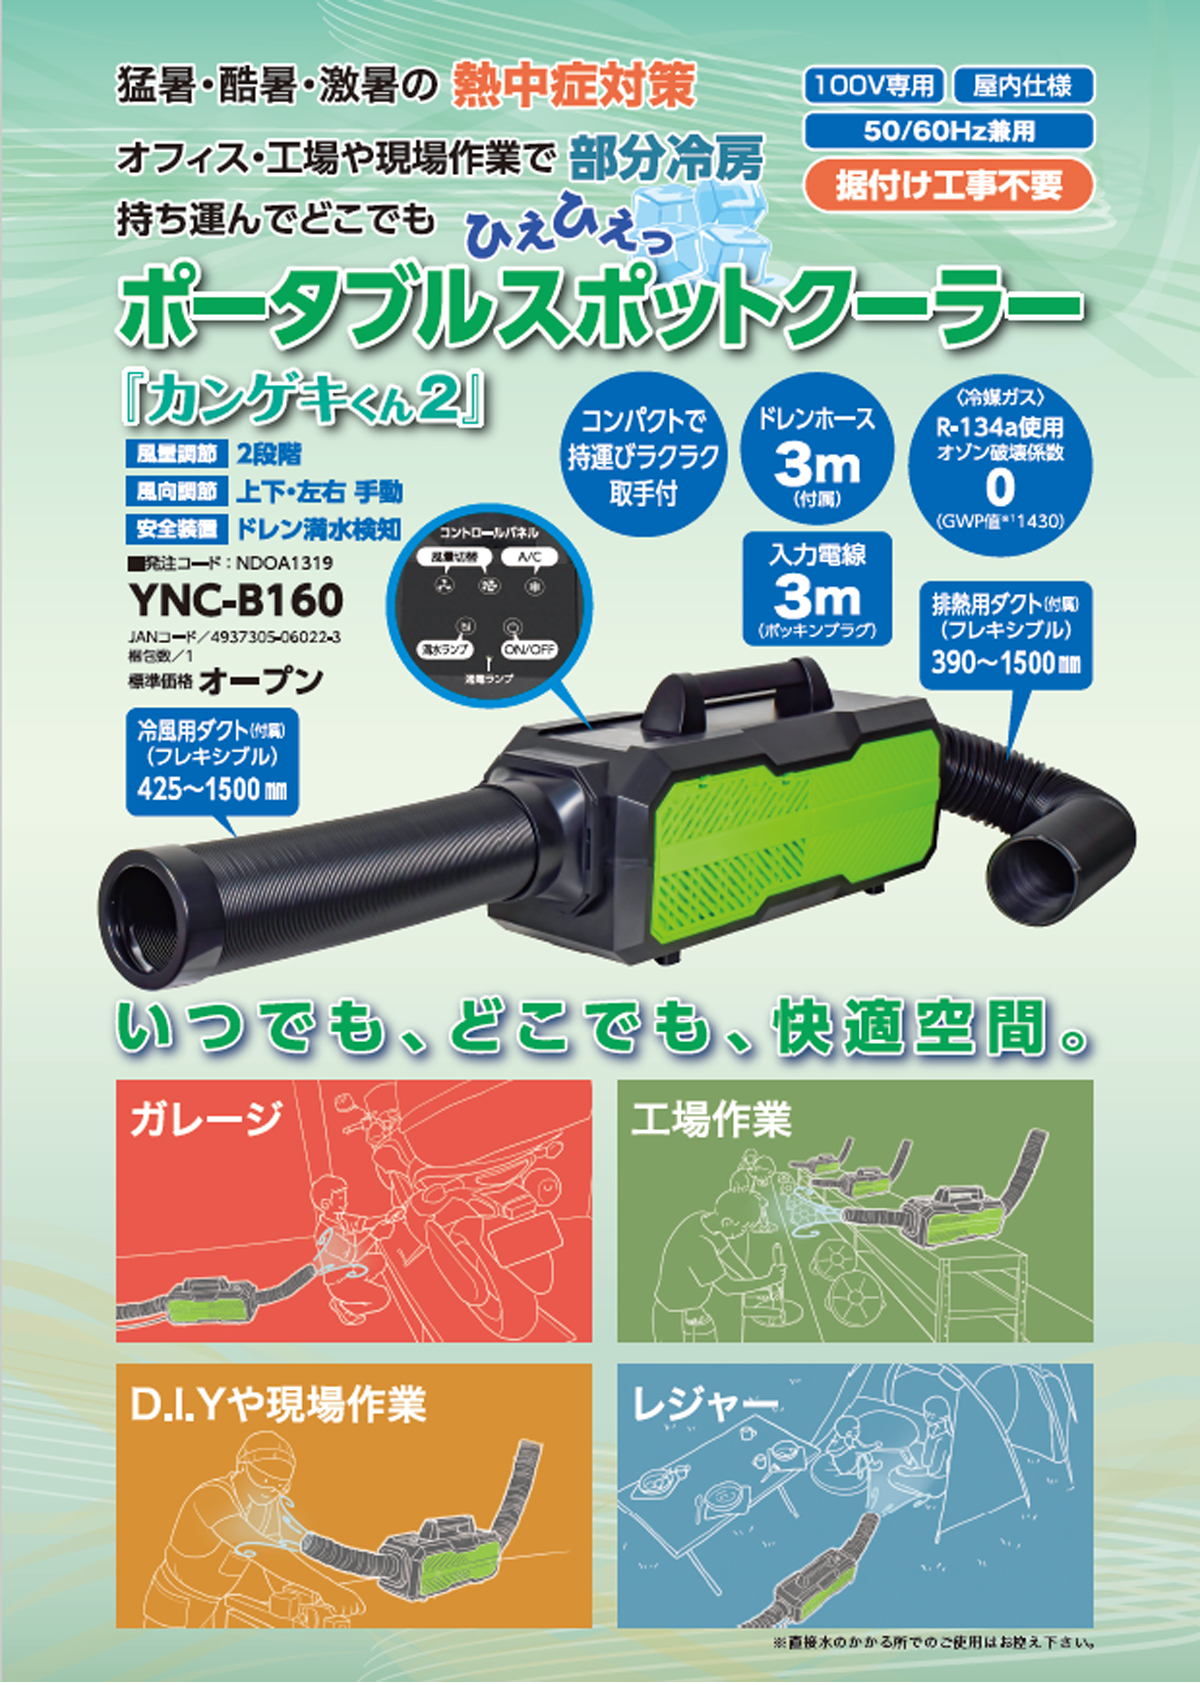 日動 YNC-B160 ポータブルスポットクーラー「カンゲキくん2」 ウエダ 